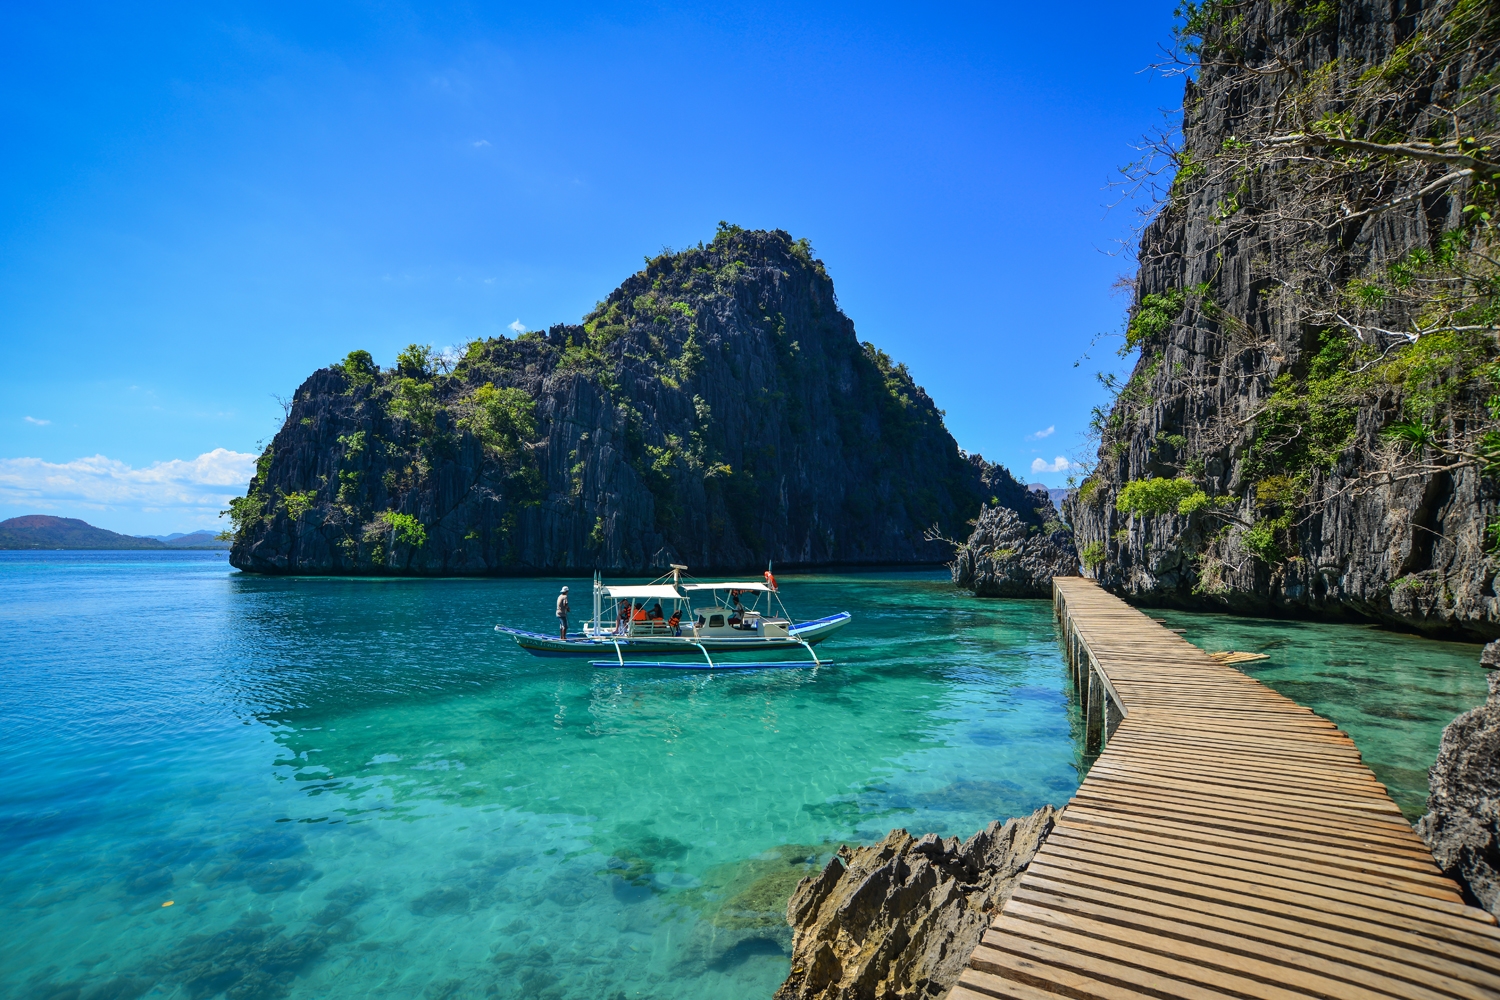 Đất nước Philippines xinh đẹp với nhiều cảnh quan kỳ vĩ. (Ảnh TL)